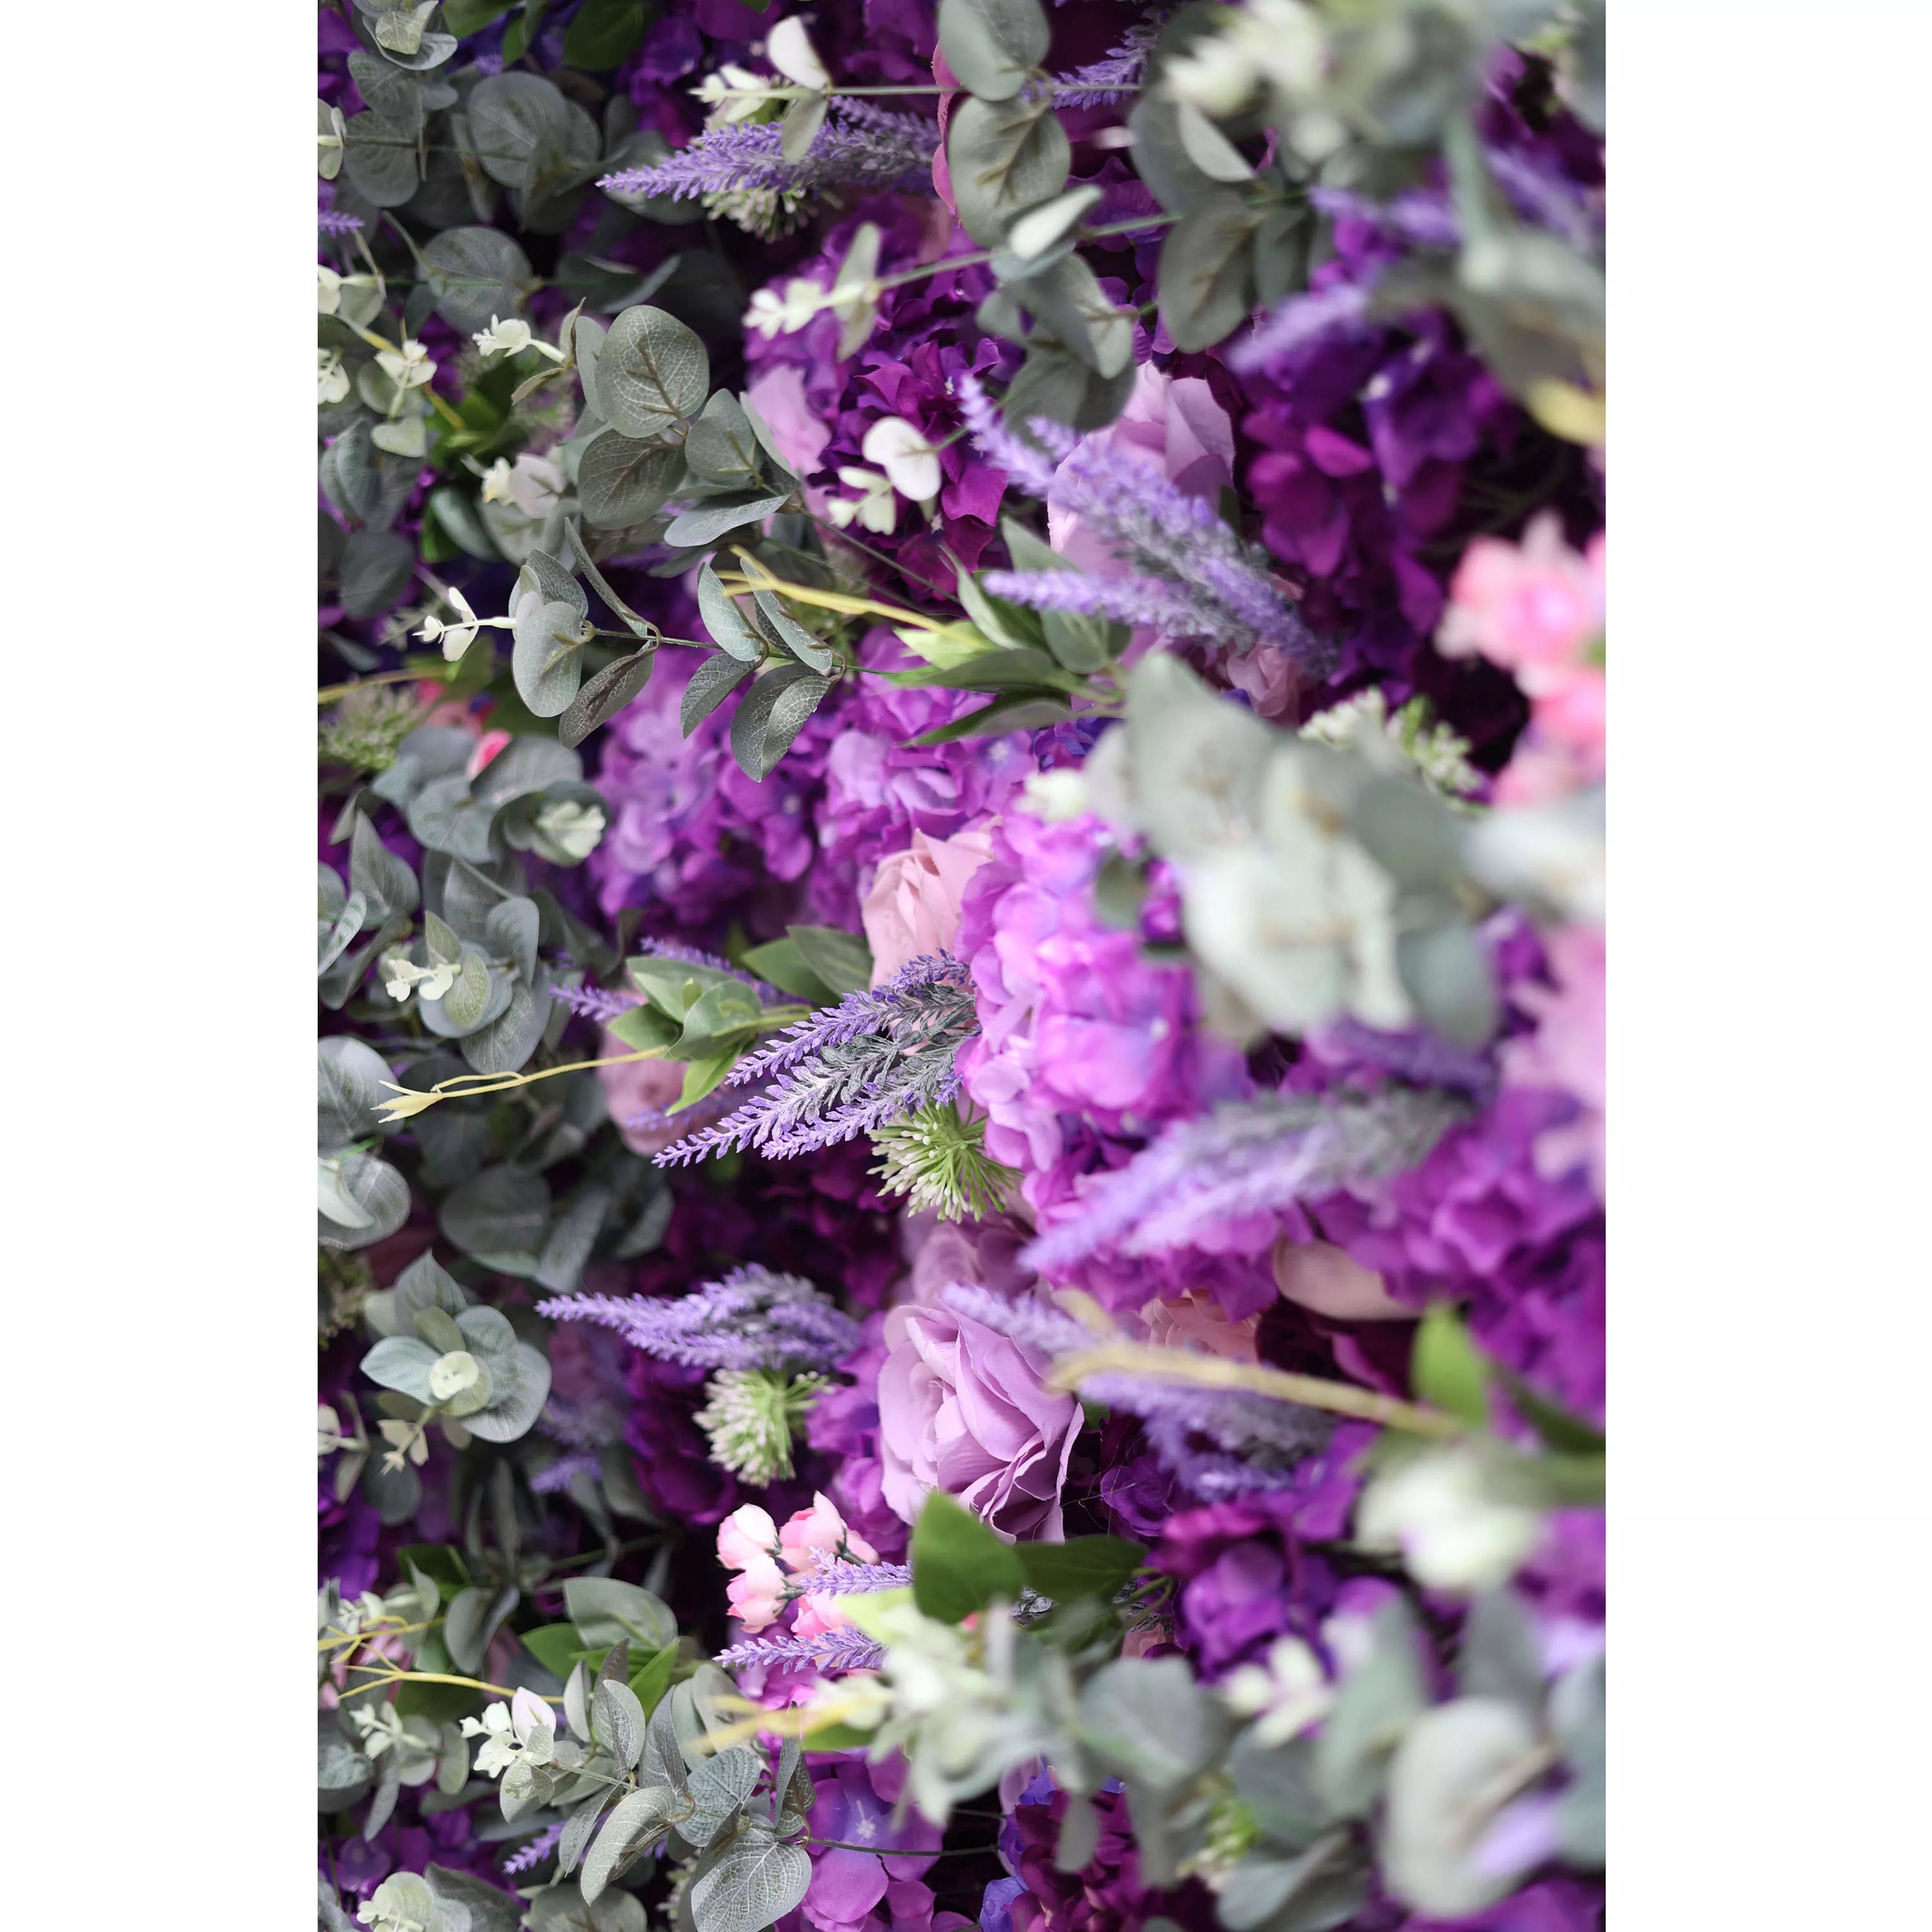 Fleurs Valar enroulables en tissu, mur de fleurs violettes artificielles, toile de fond de mariage, décor de fête florale, photographie d'événement-VF-192 